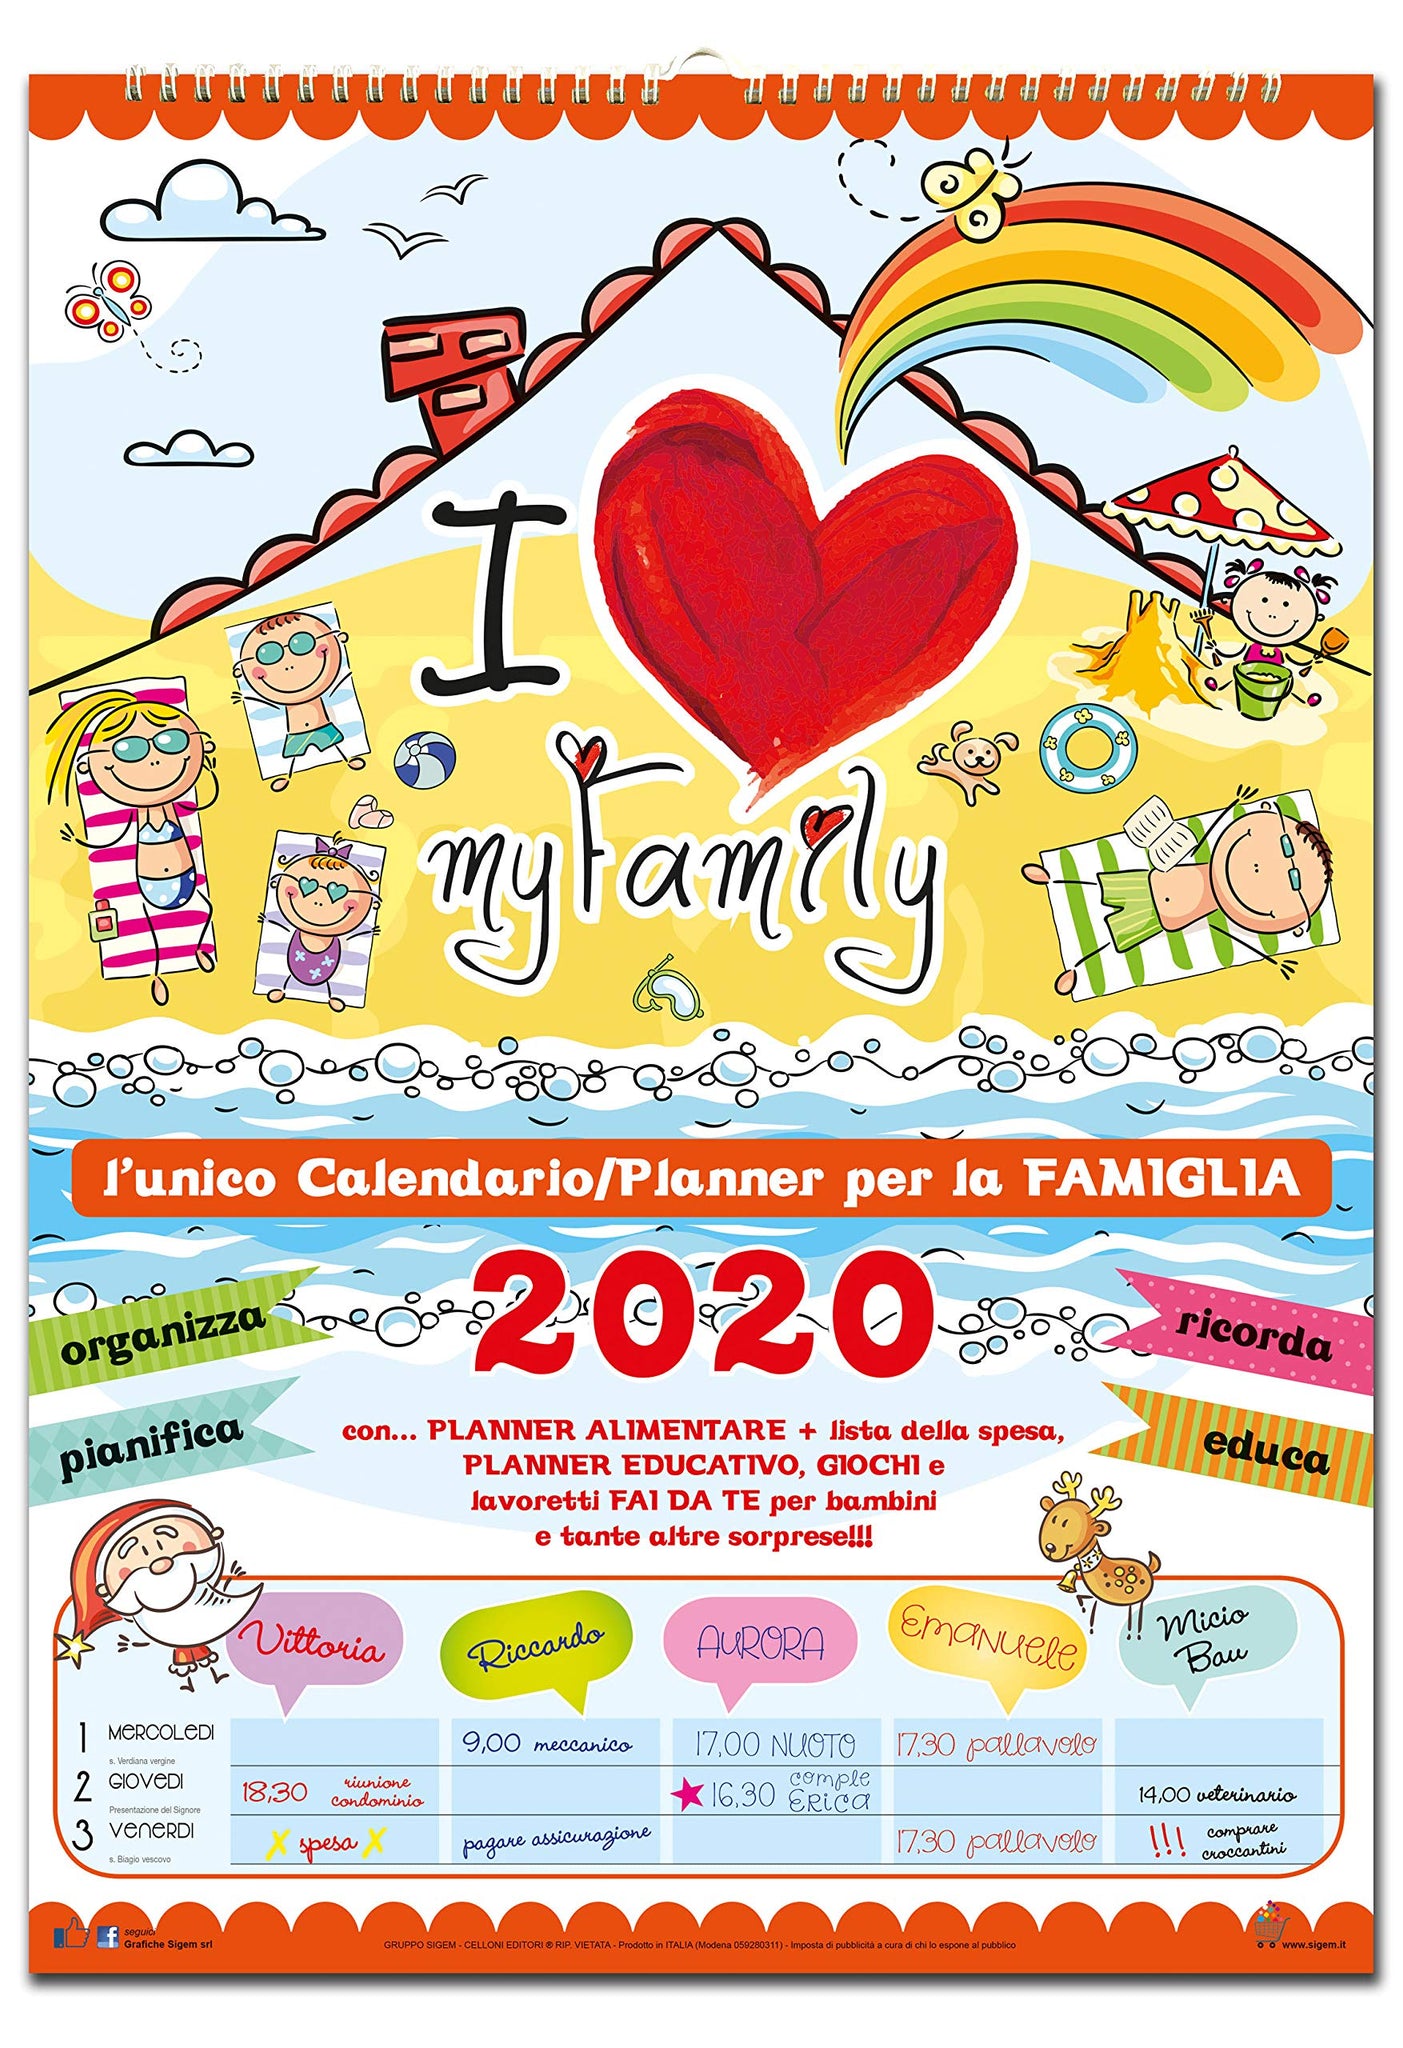 Calendario Agenda della Famiglia 2020 - My Family –